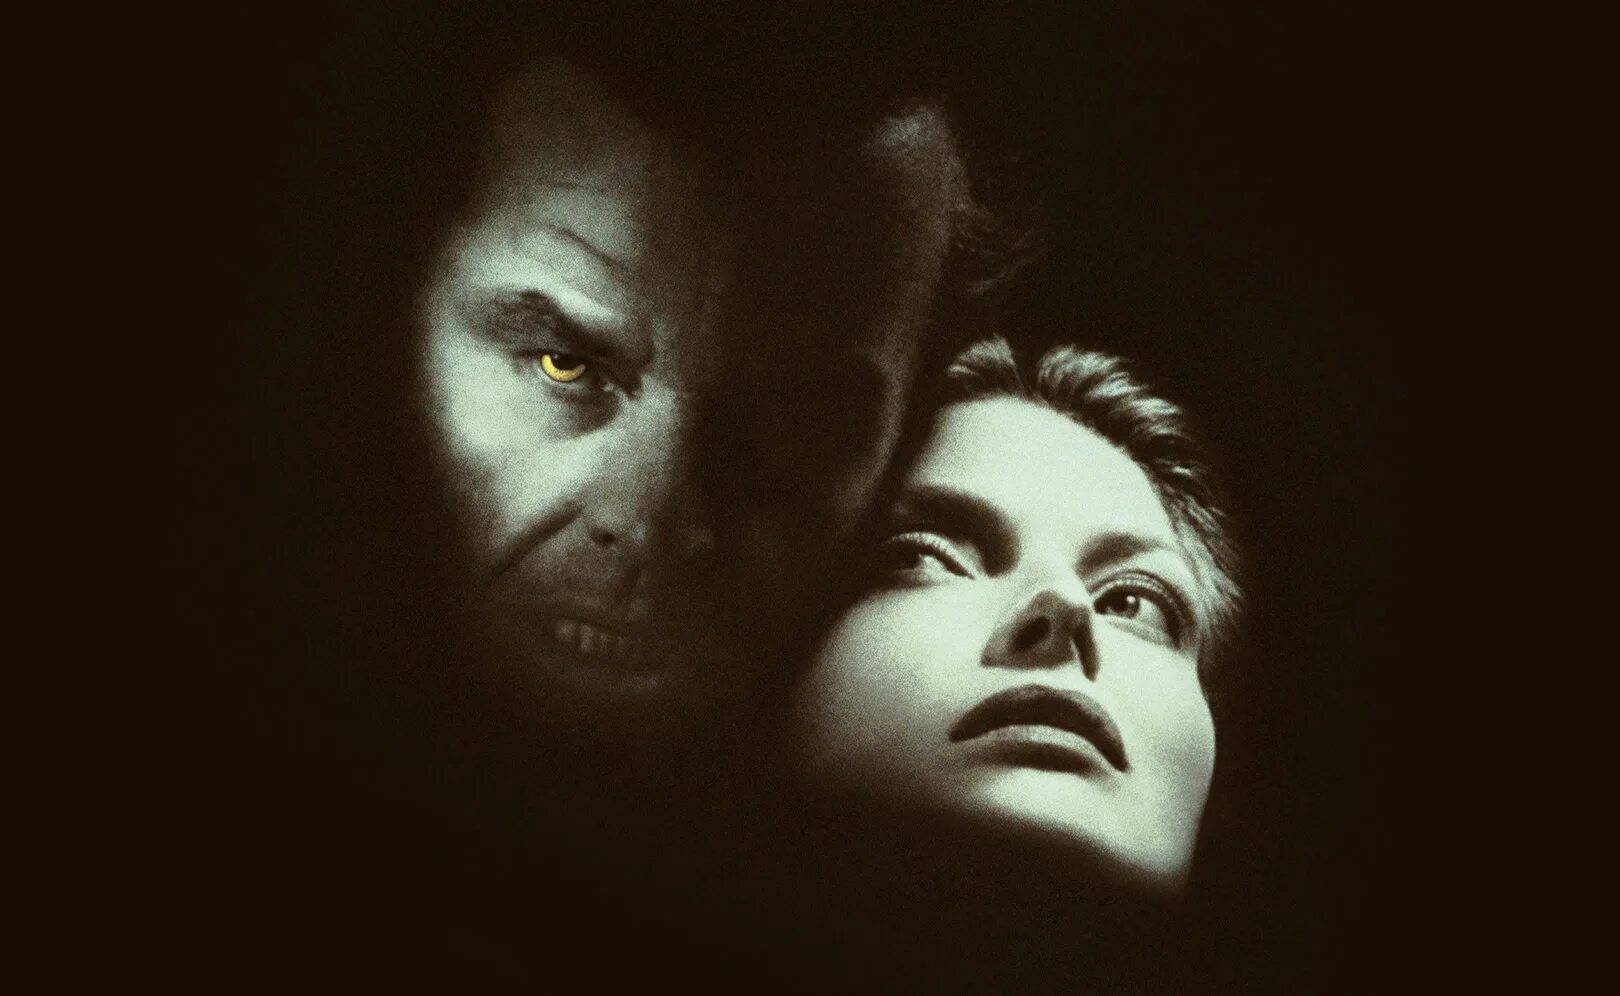 Волк 1994 с Джеком Николсоном. Horror romance